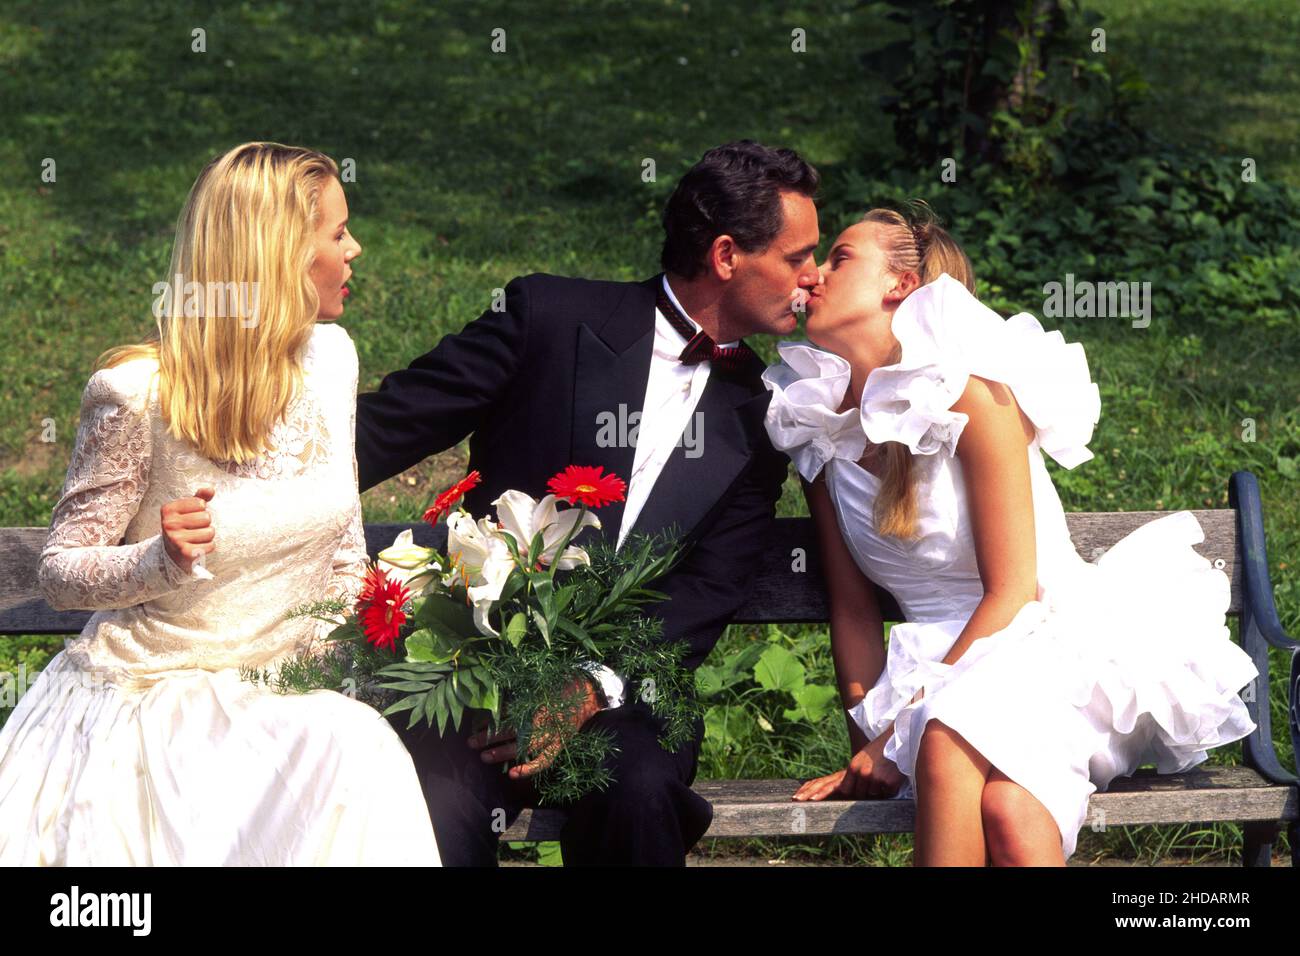 Frisch getrauter Ehemann liebt zwei Frauen, küsst seine Braut auf der Parkbank, Nebenbuhlerin schaut zu, Playboy, Vielehe, Gigola, Stock Photo